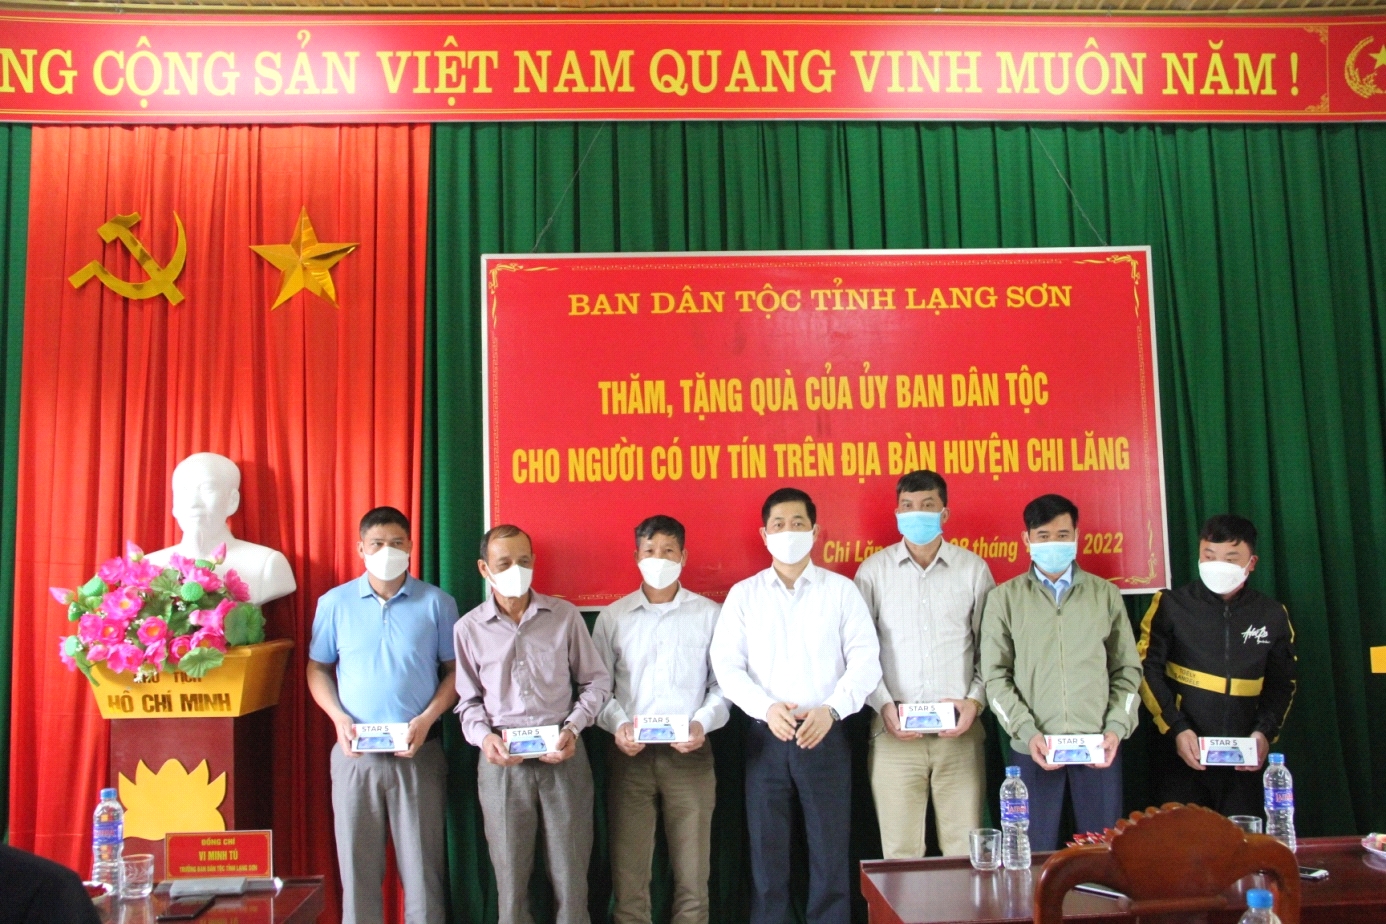 Đồng chí Vi Minh Tú, Trưởng Ban Dân tộc thăm, tặng quà cho Người uy tín trên địa bàn huyện Chi Lăng